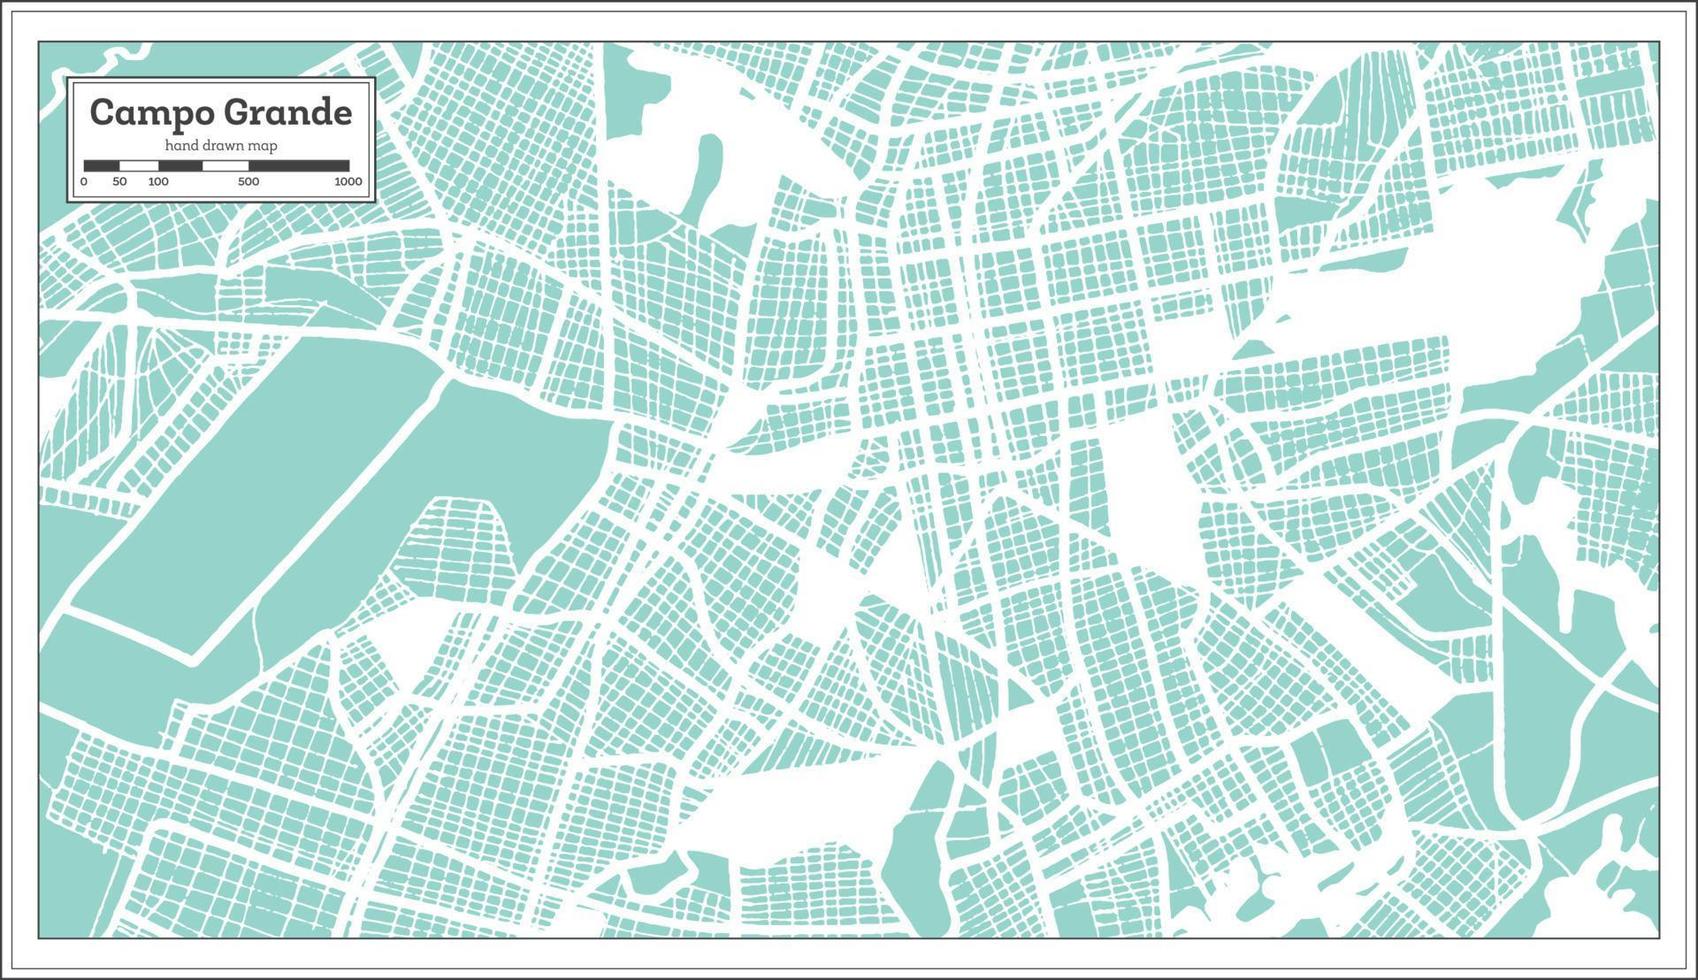 plan de la ville de campo grande brésil dans un style rétro. carte muette. vecteur